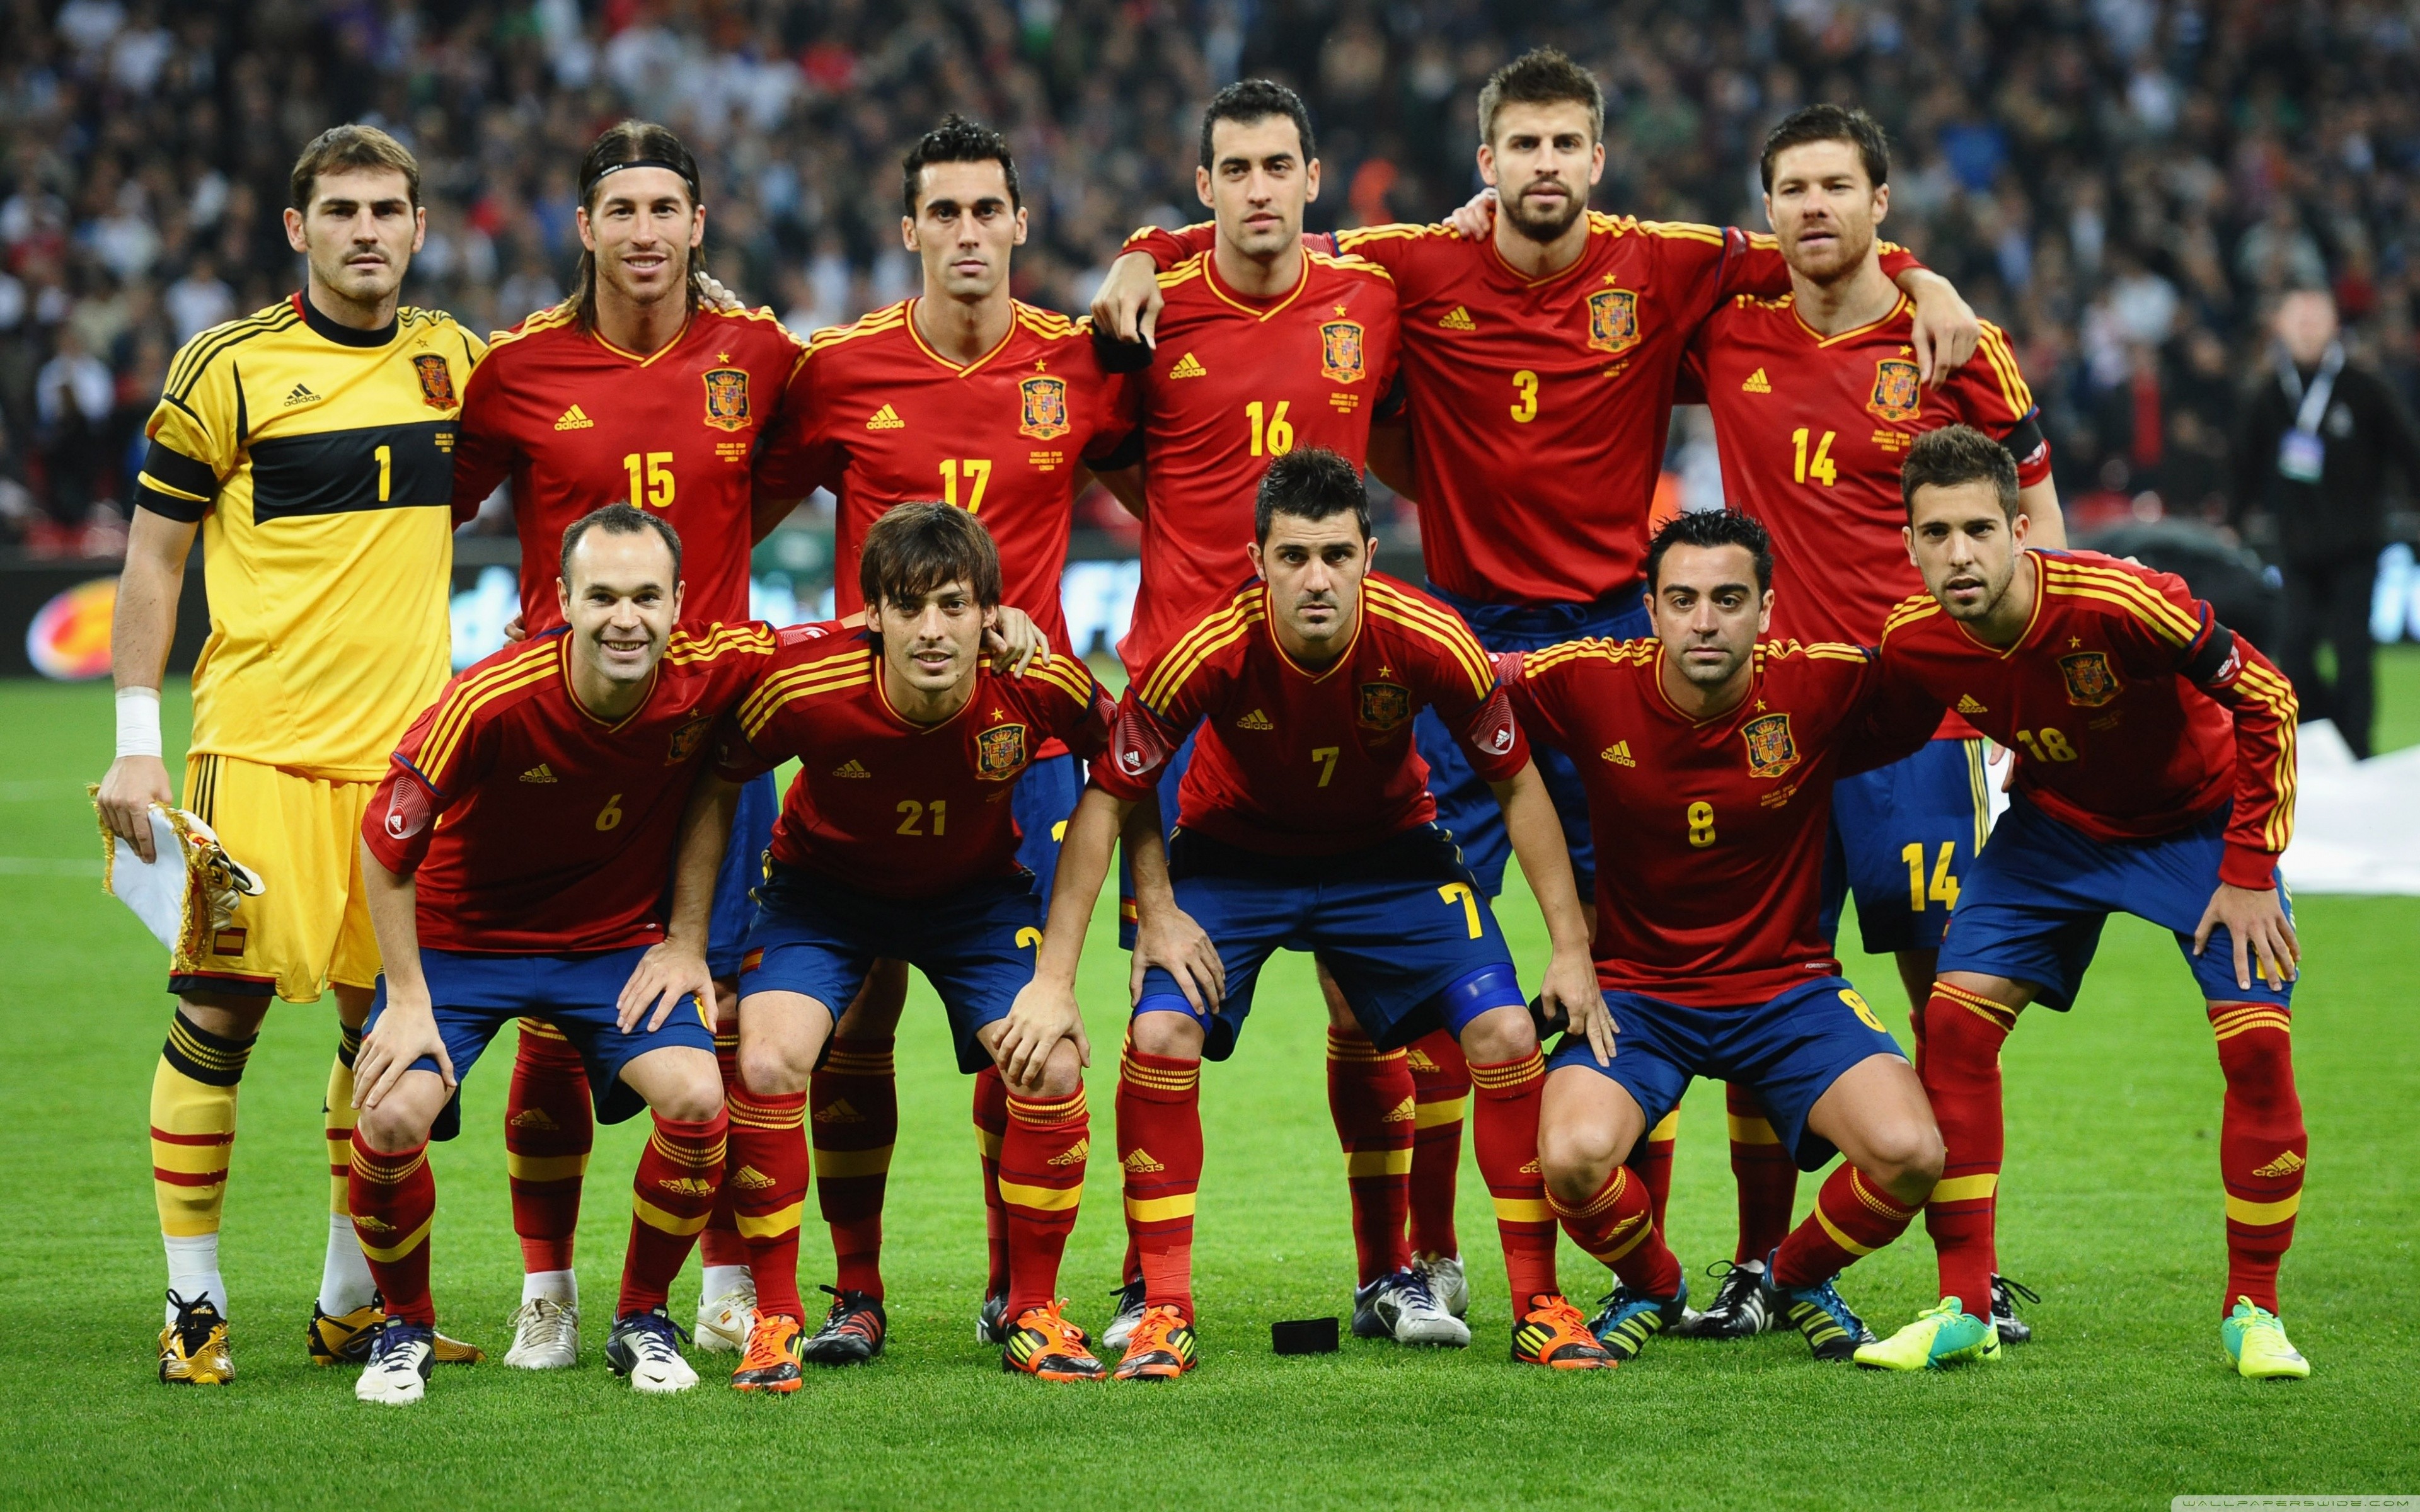 壁纸秀:西班牙国家队 - 西班牙|懂球帝